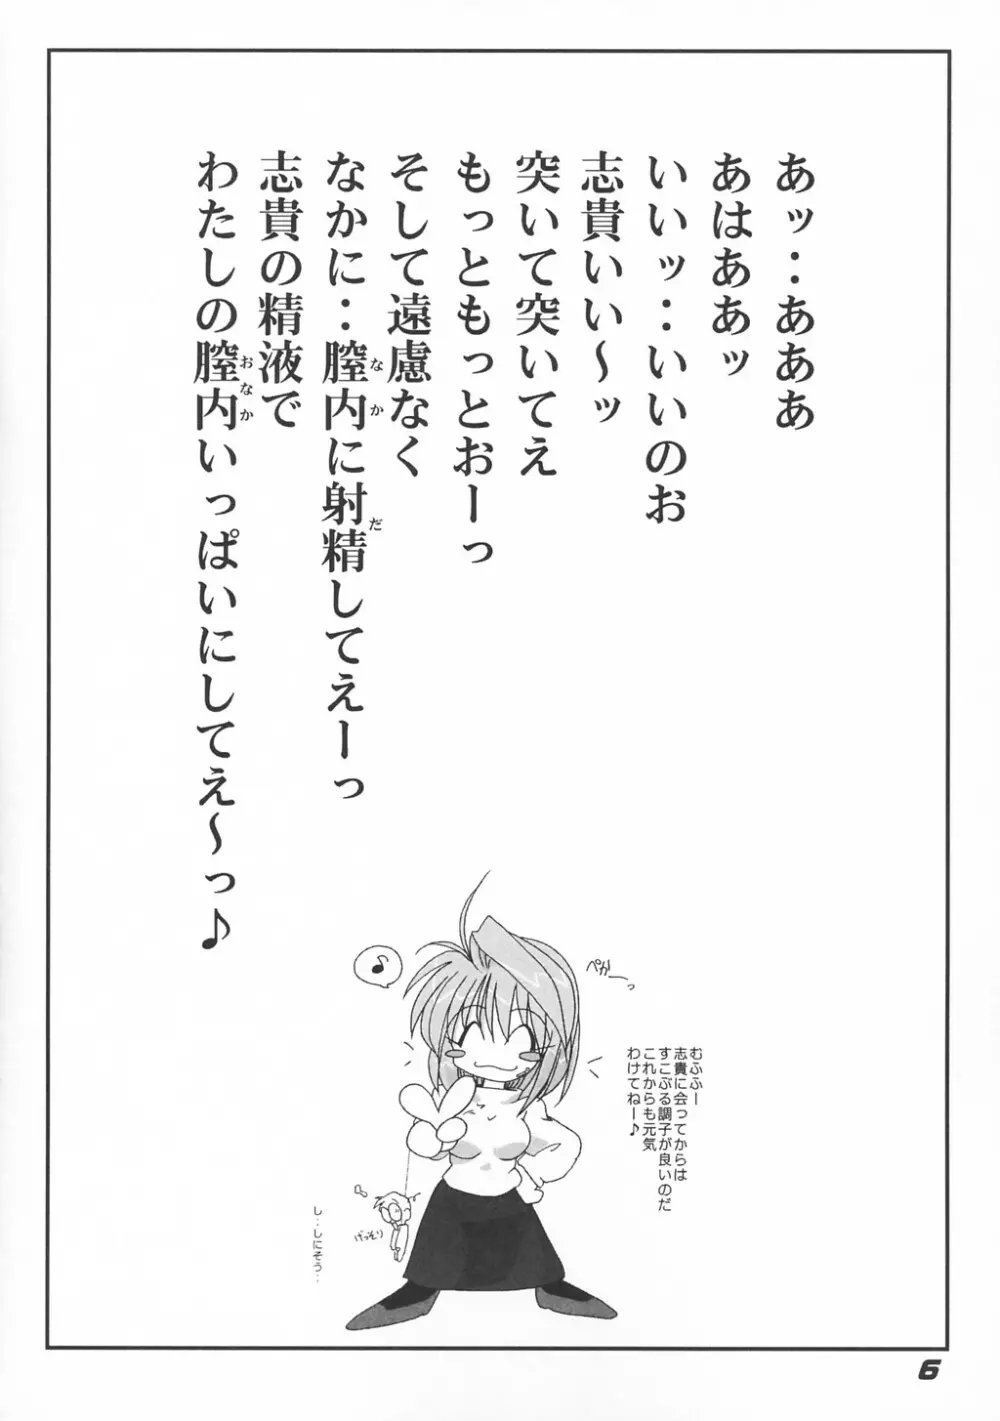 [喜栄座cmp] N+ [N-Plus] #7 (月姫) - page7